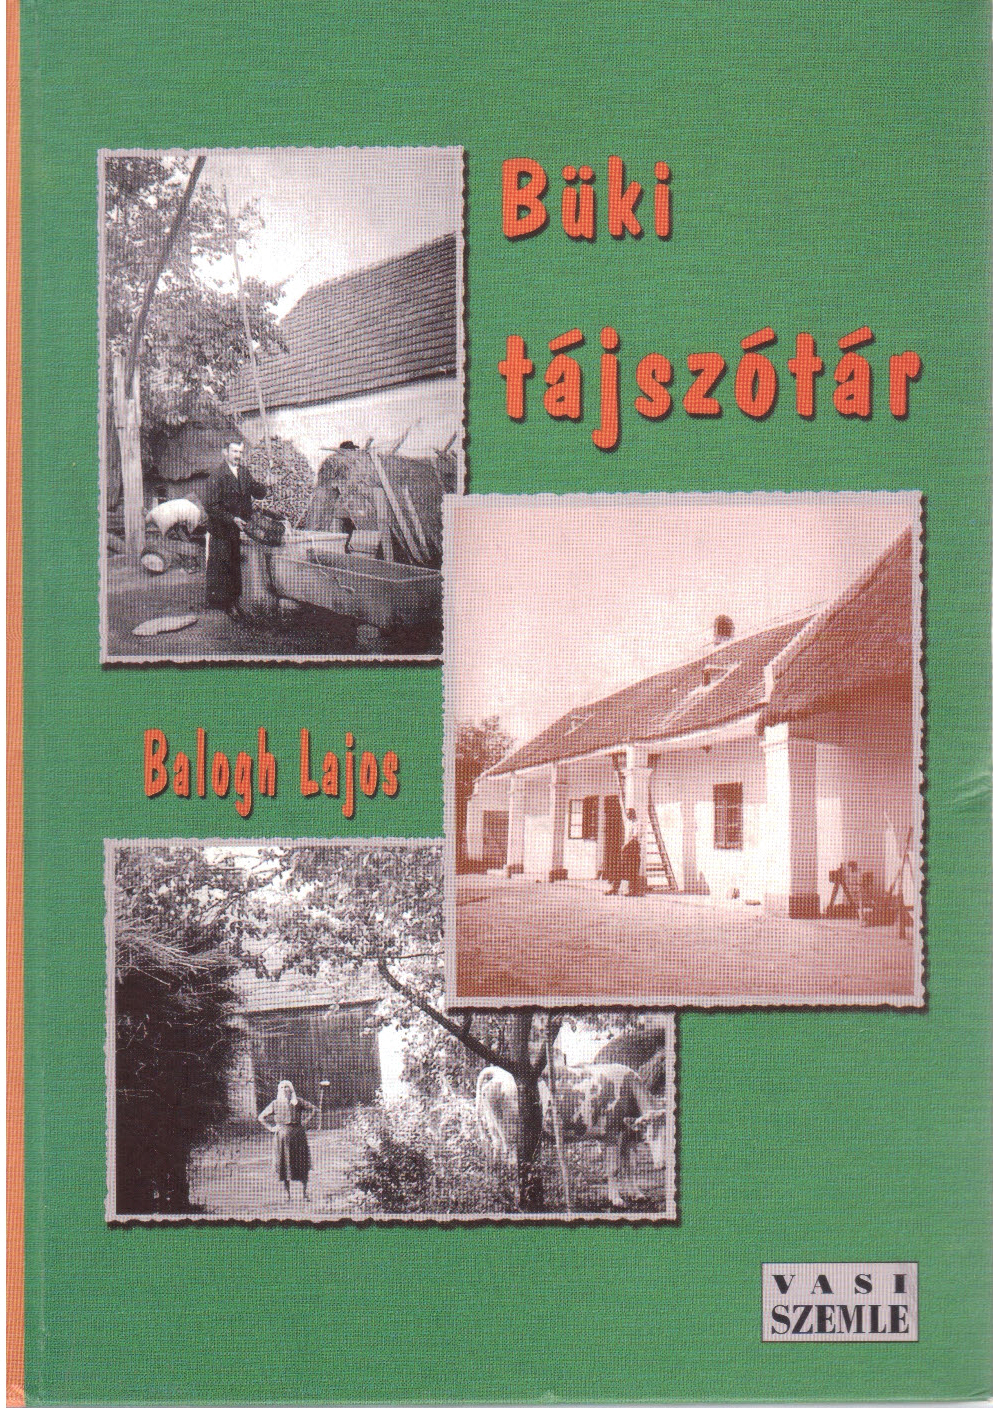 Büki Tájszótár, Balogh Lajos, 2004&lt;br /&gt;&lt;br /&gt;[Forrás: TINTA Könyvkiadó archívuma, Kiss Gábor szótárgyűjteménye]